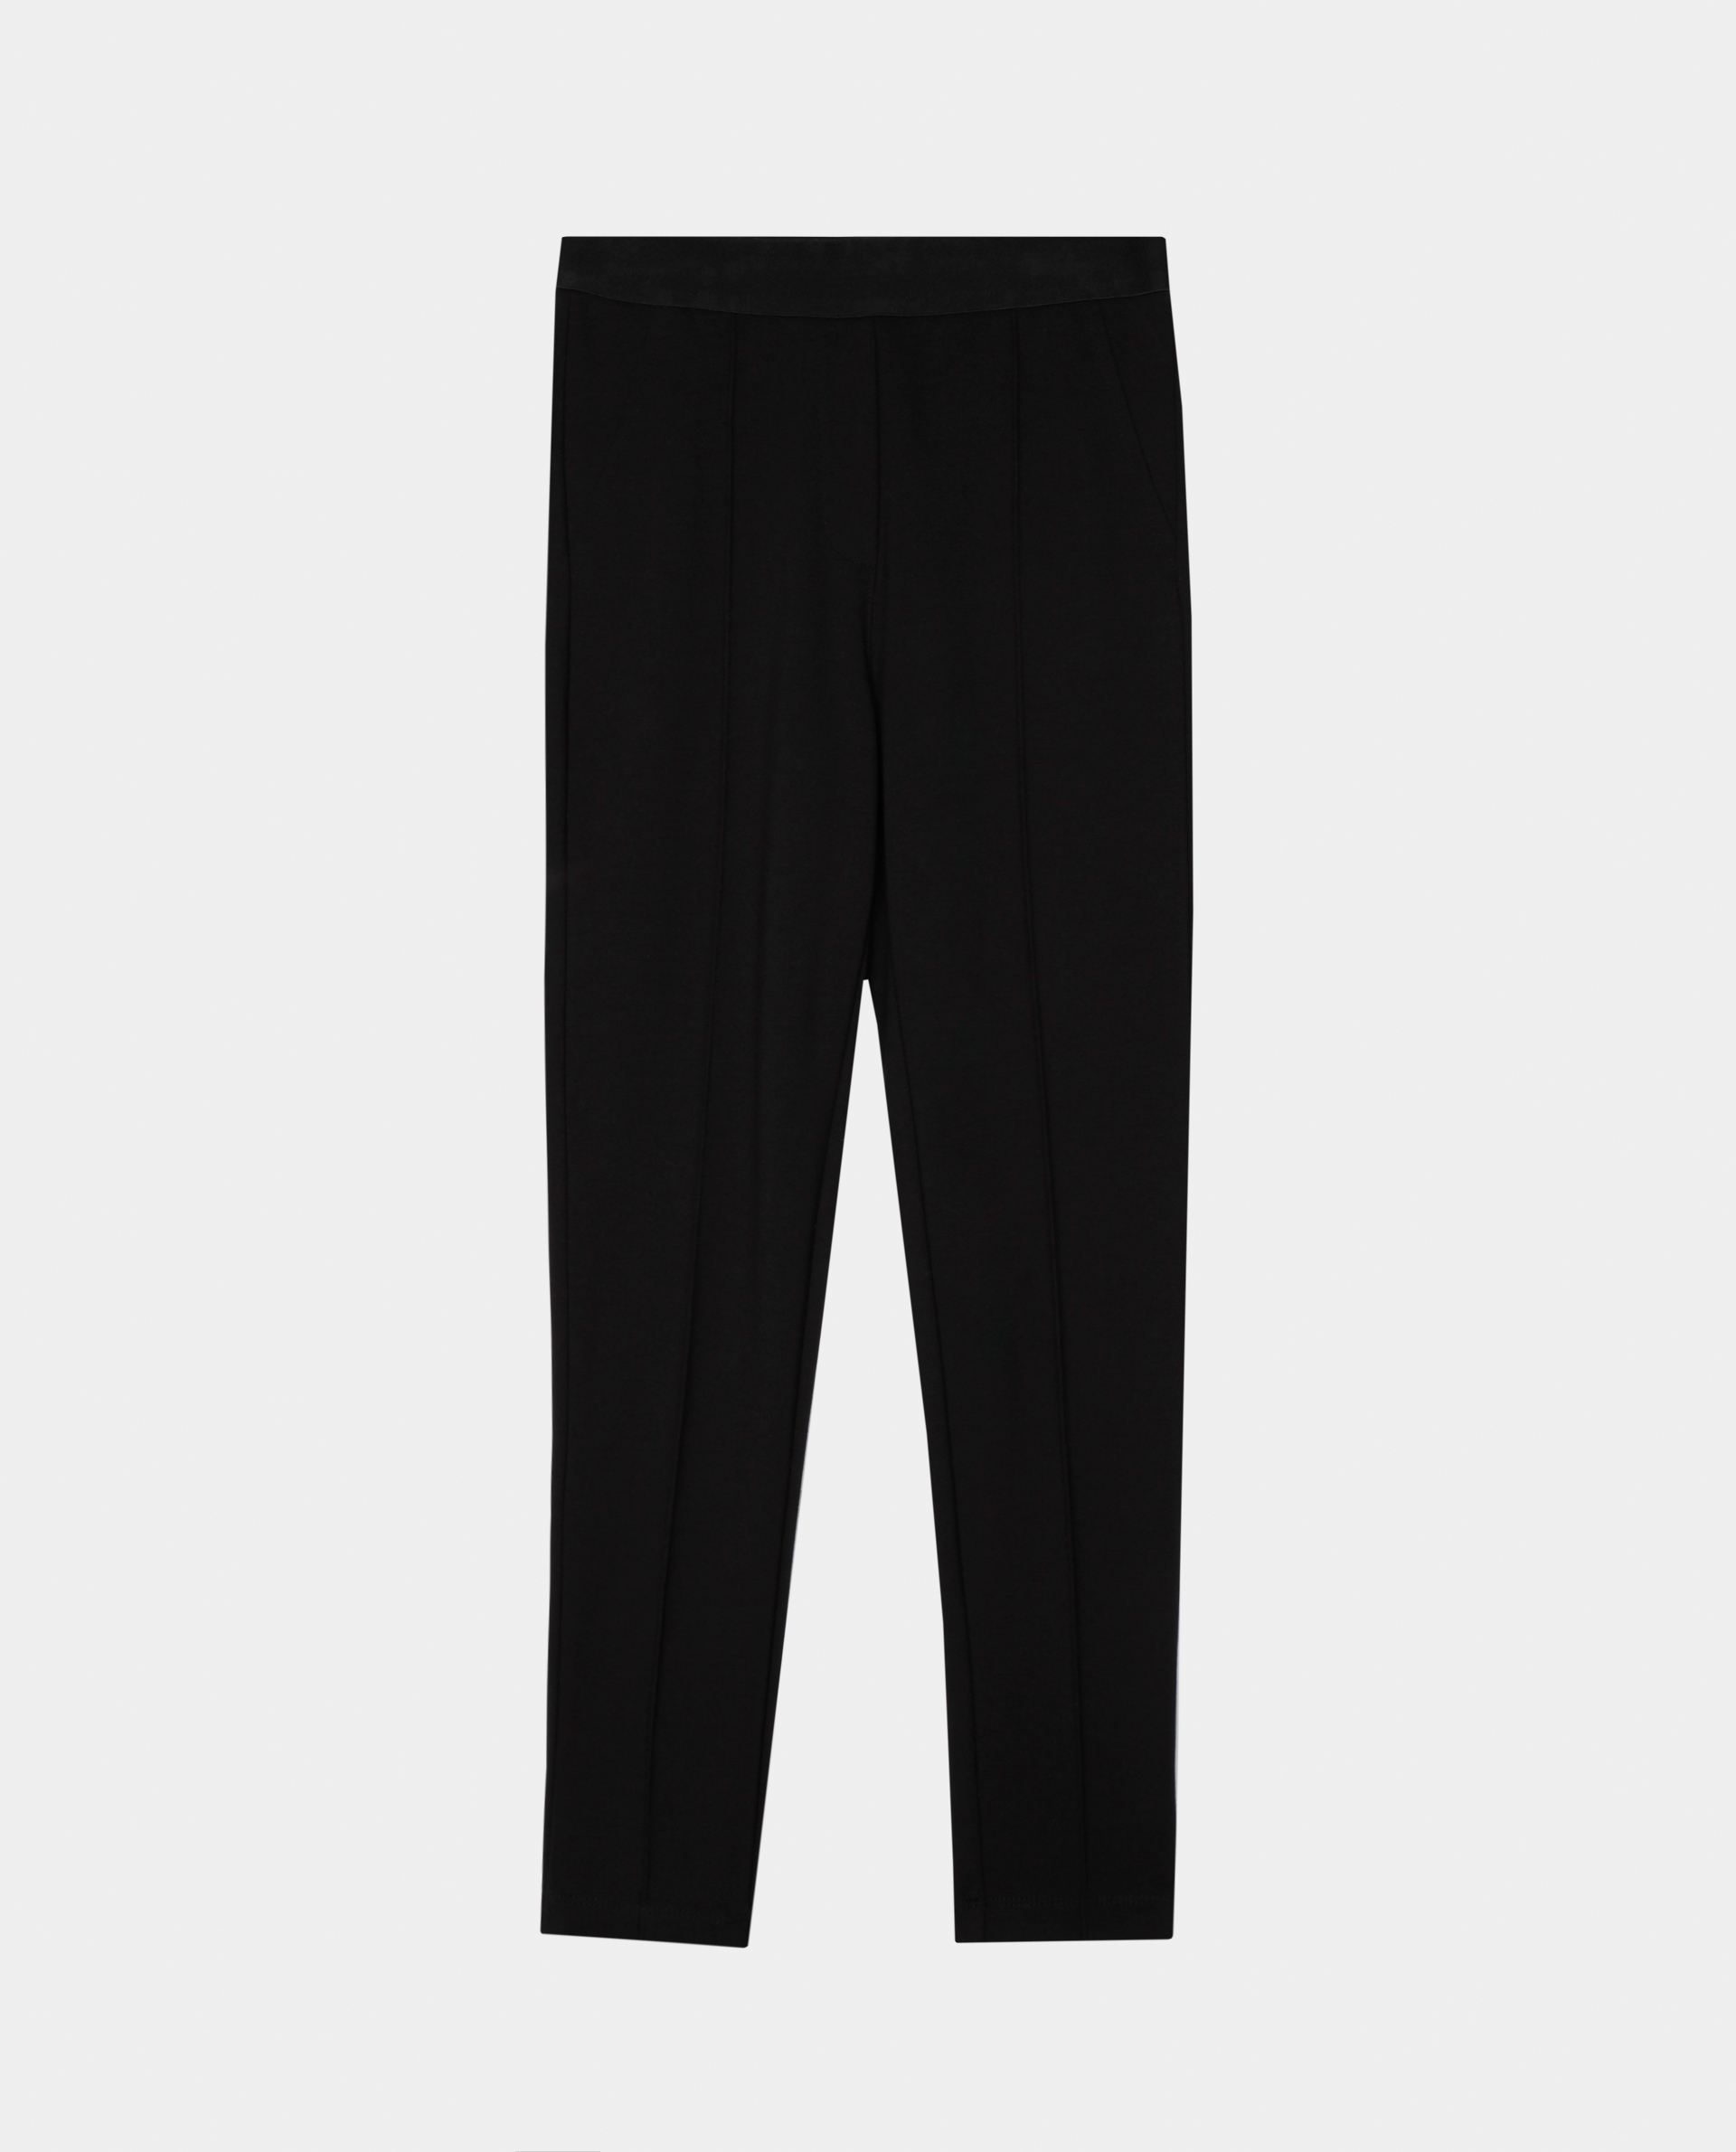 Черные брюки из джерси Gulliver 220GSGC5601, размер 152, цвет черный regular fit / прямые - фото 4